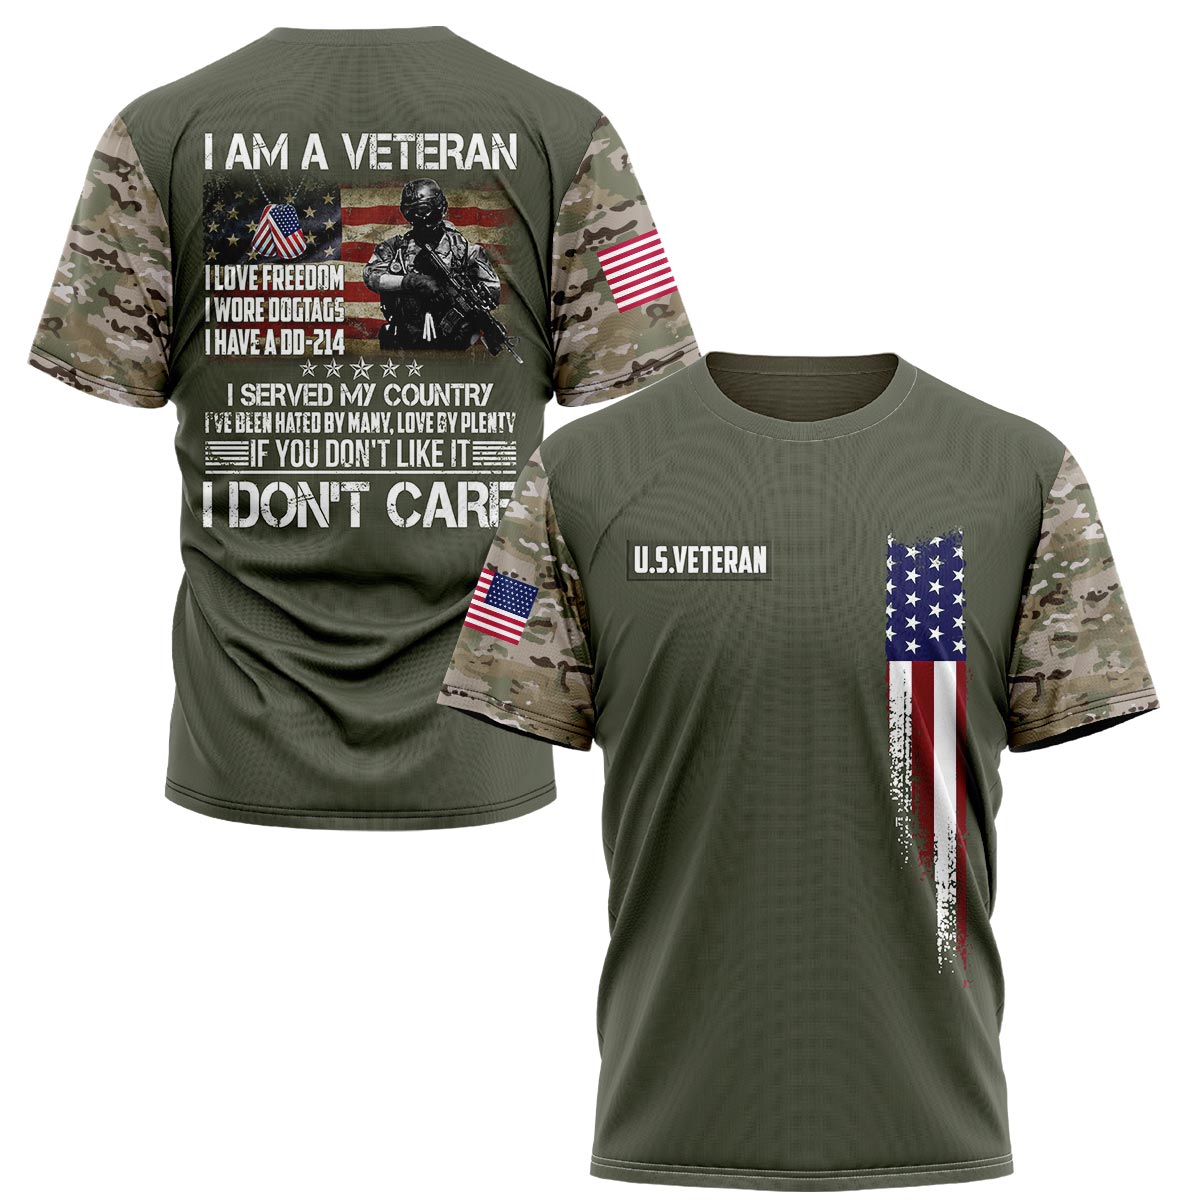 I Am A Veteran I Have A DD-214 Shirts